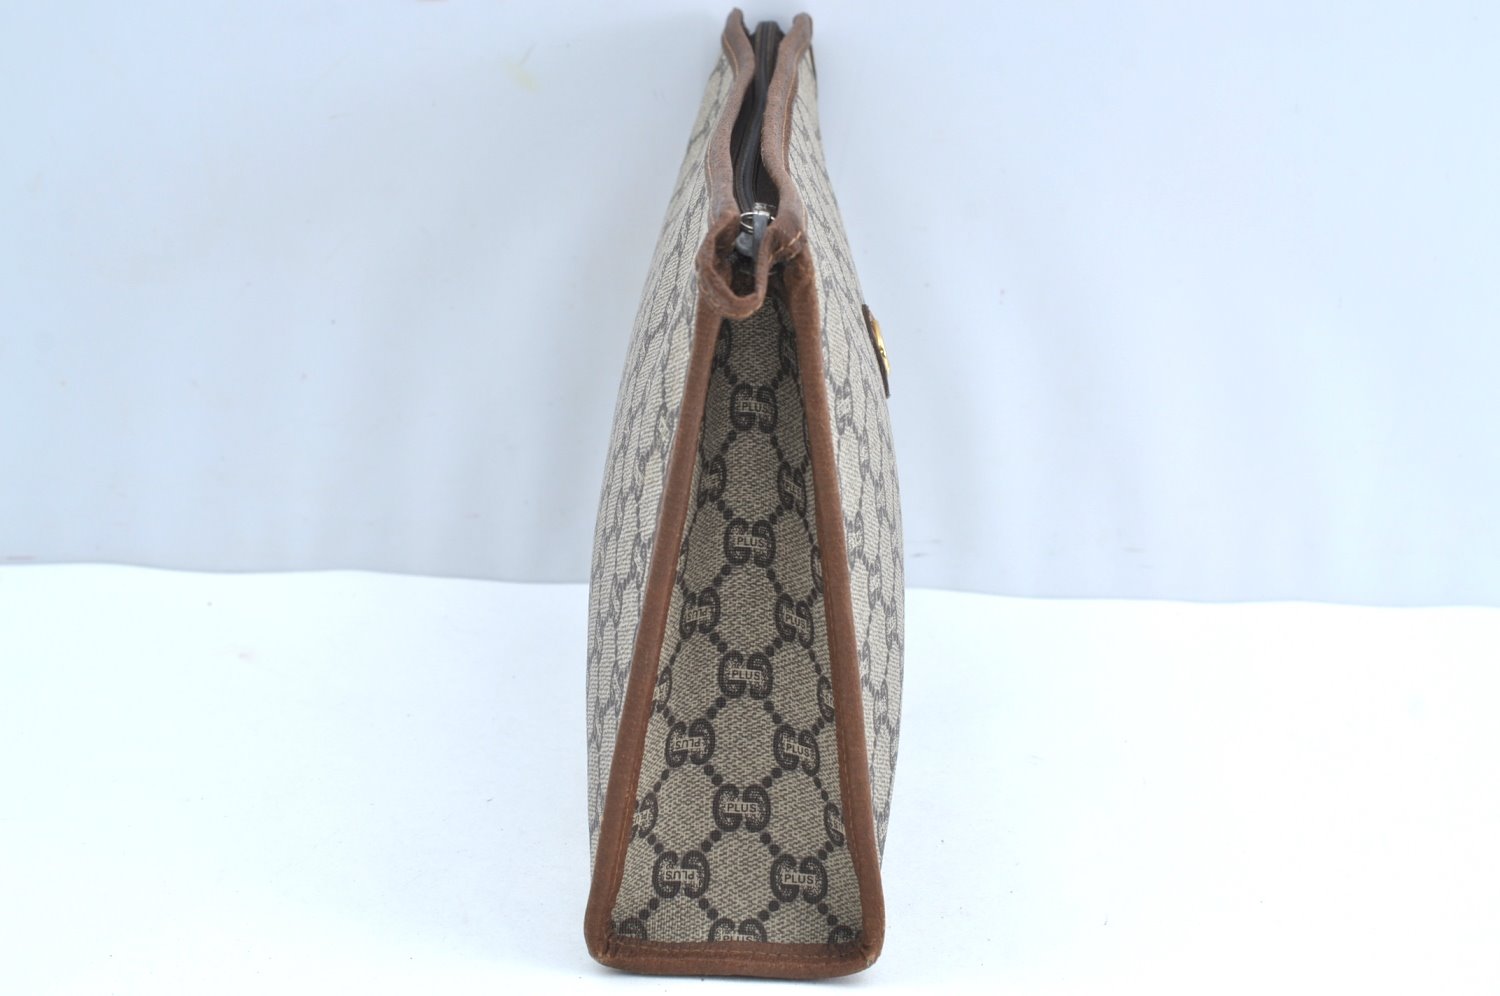 Authentic GUCCI GG Plus Vintage Clutch Hand Bag Purse PVC Leather Brown K8173